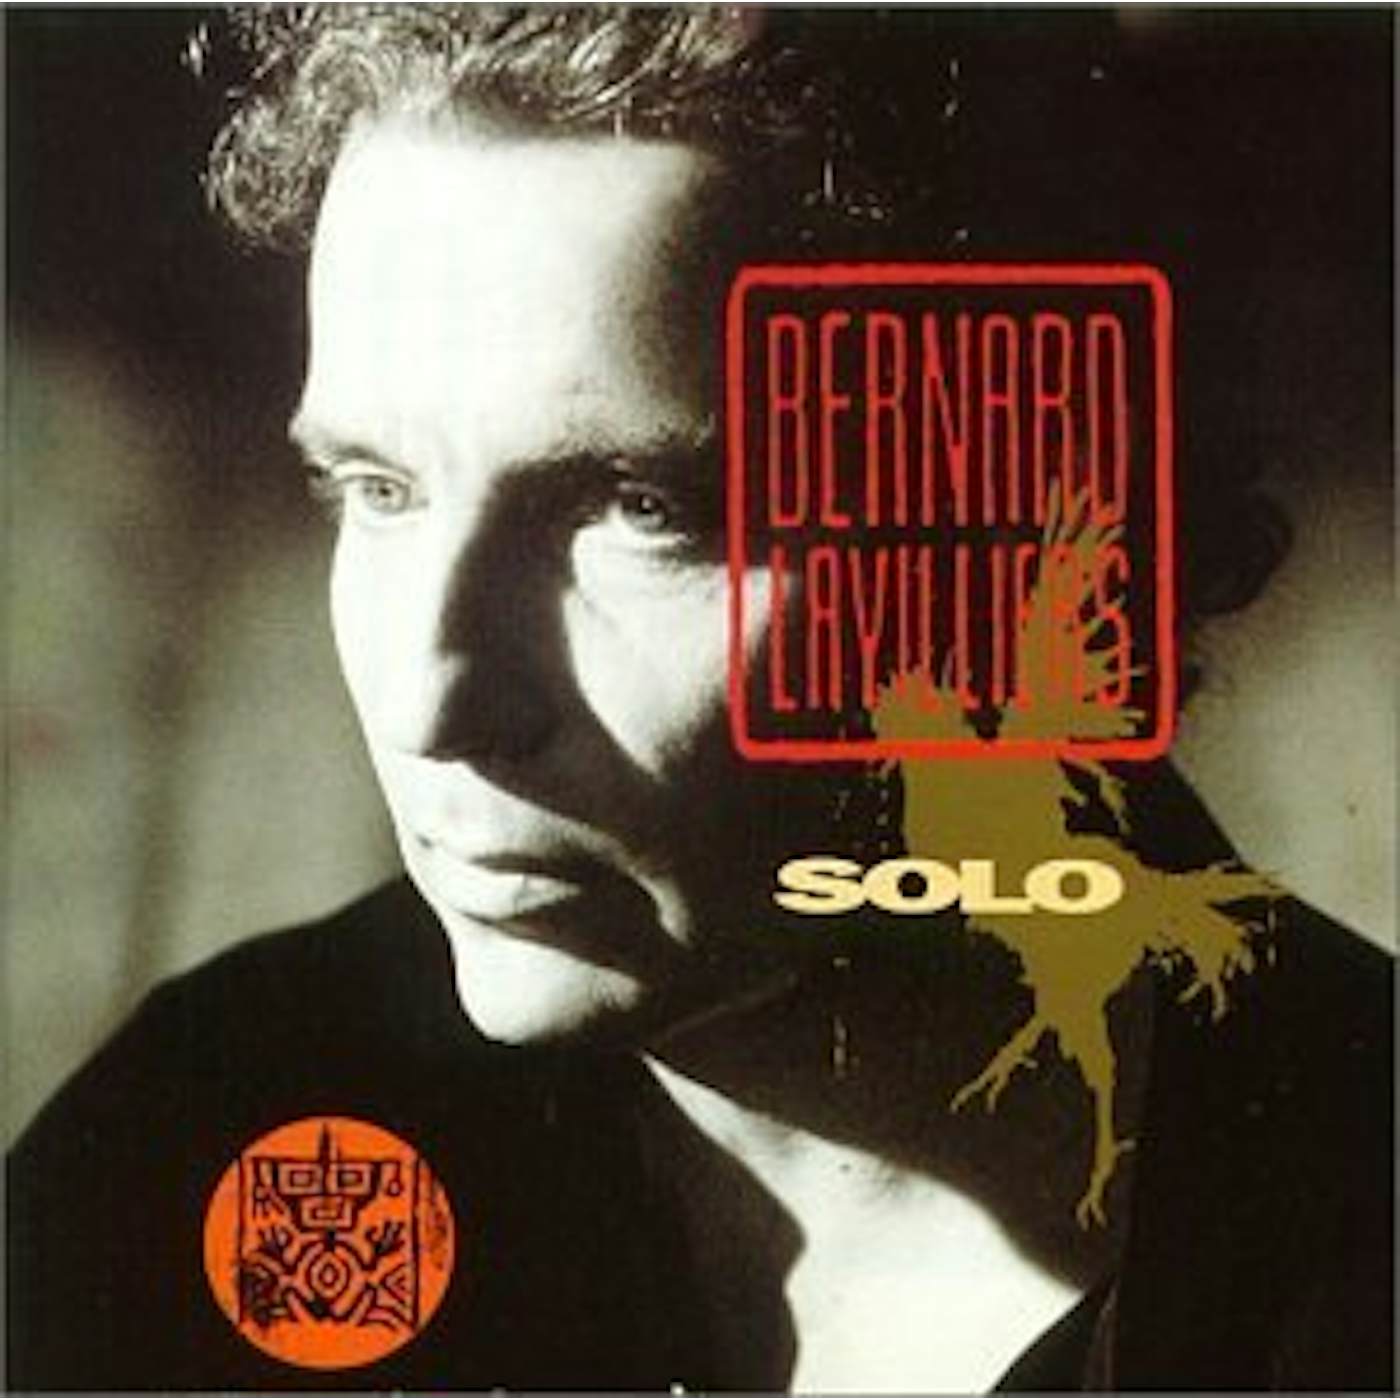 Bernard Lavilliers SOLO CD